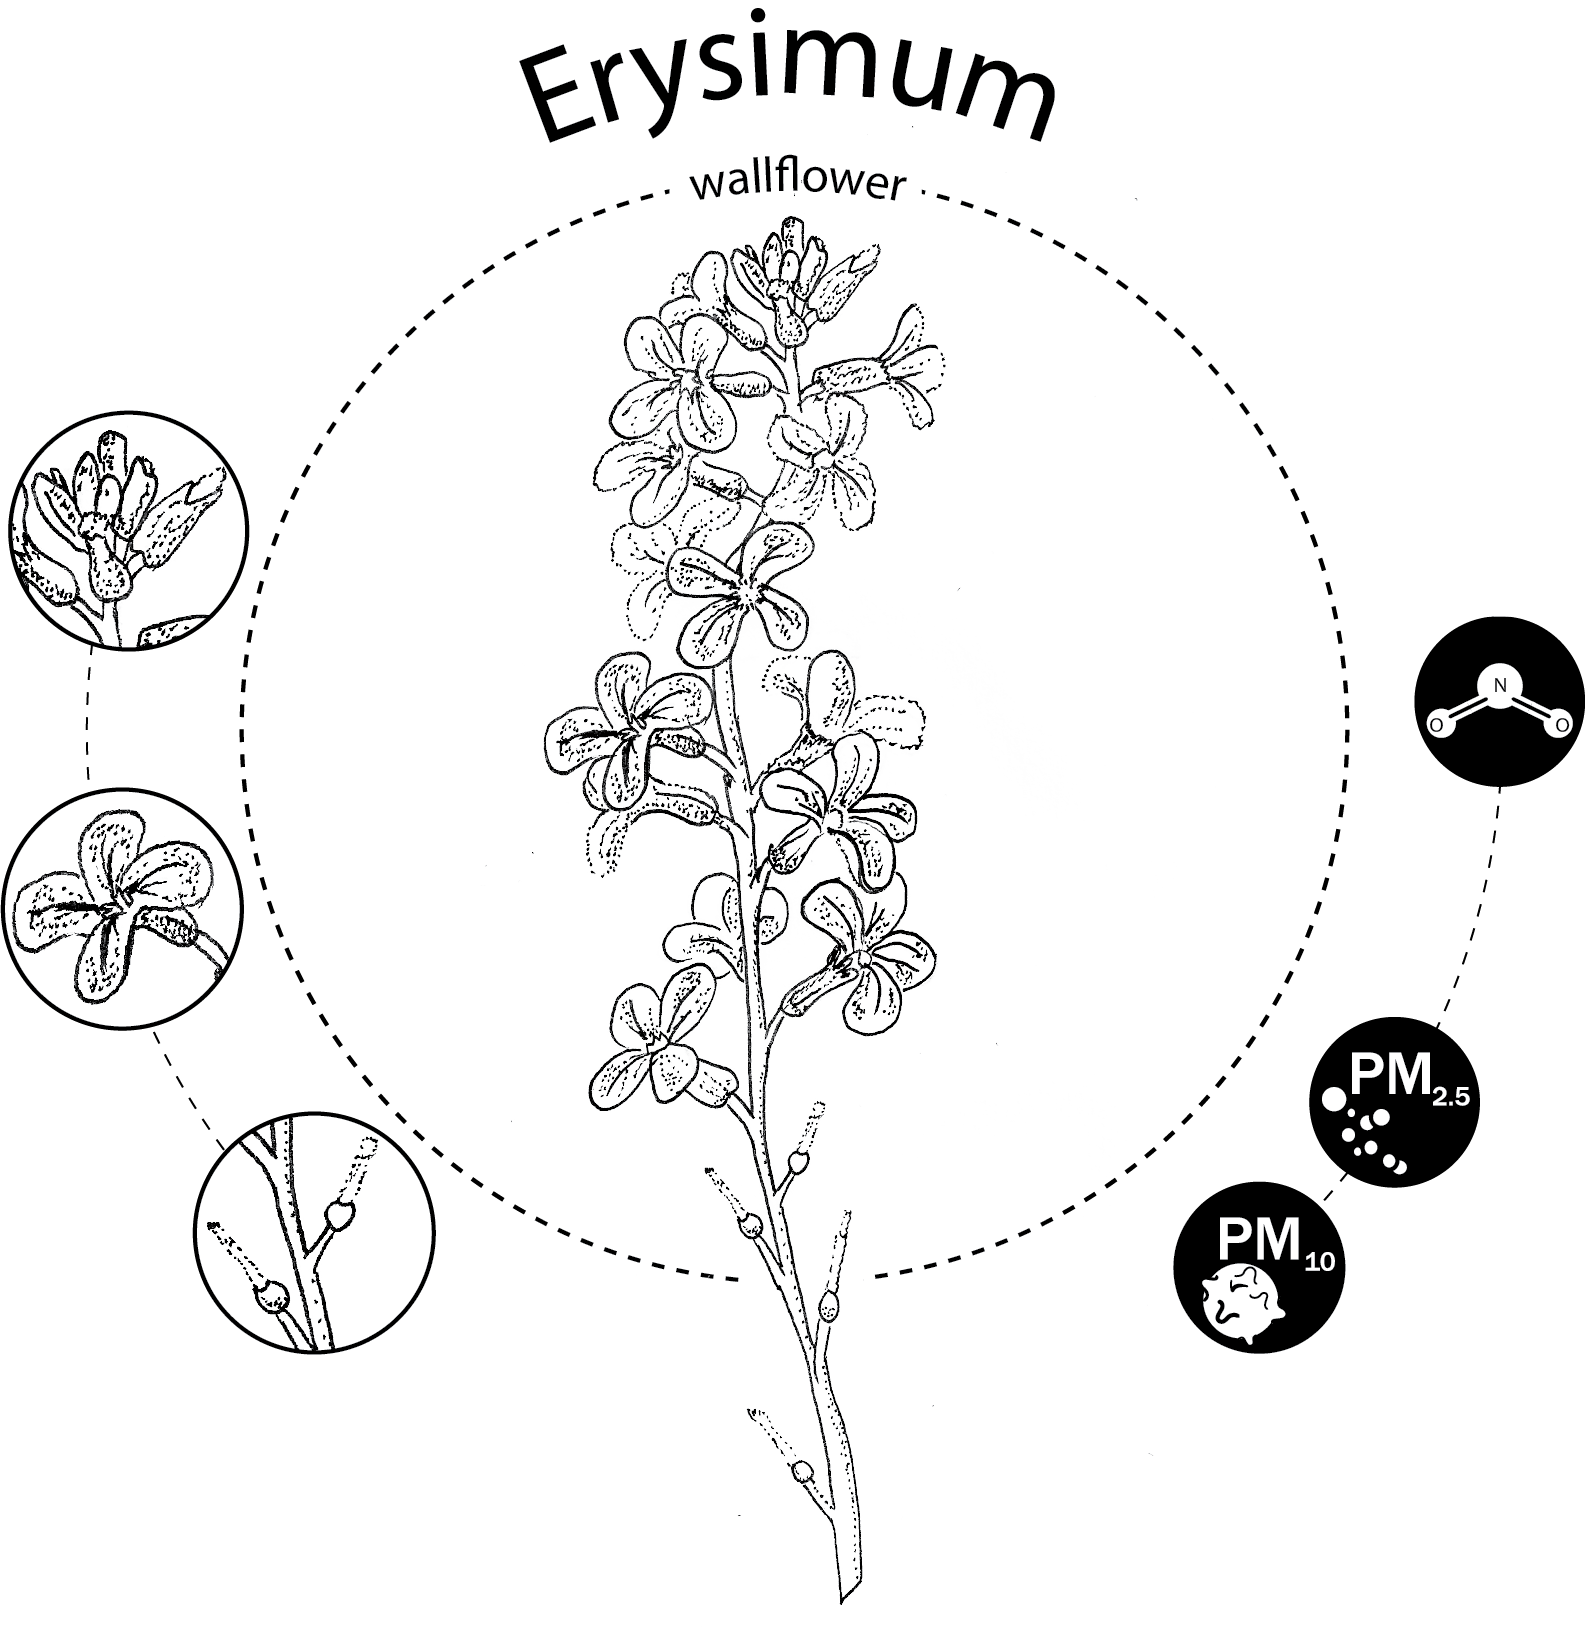 Erysimum